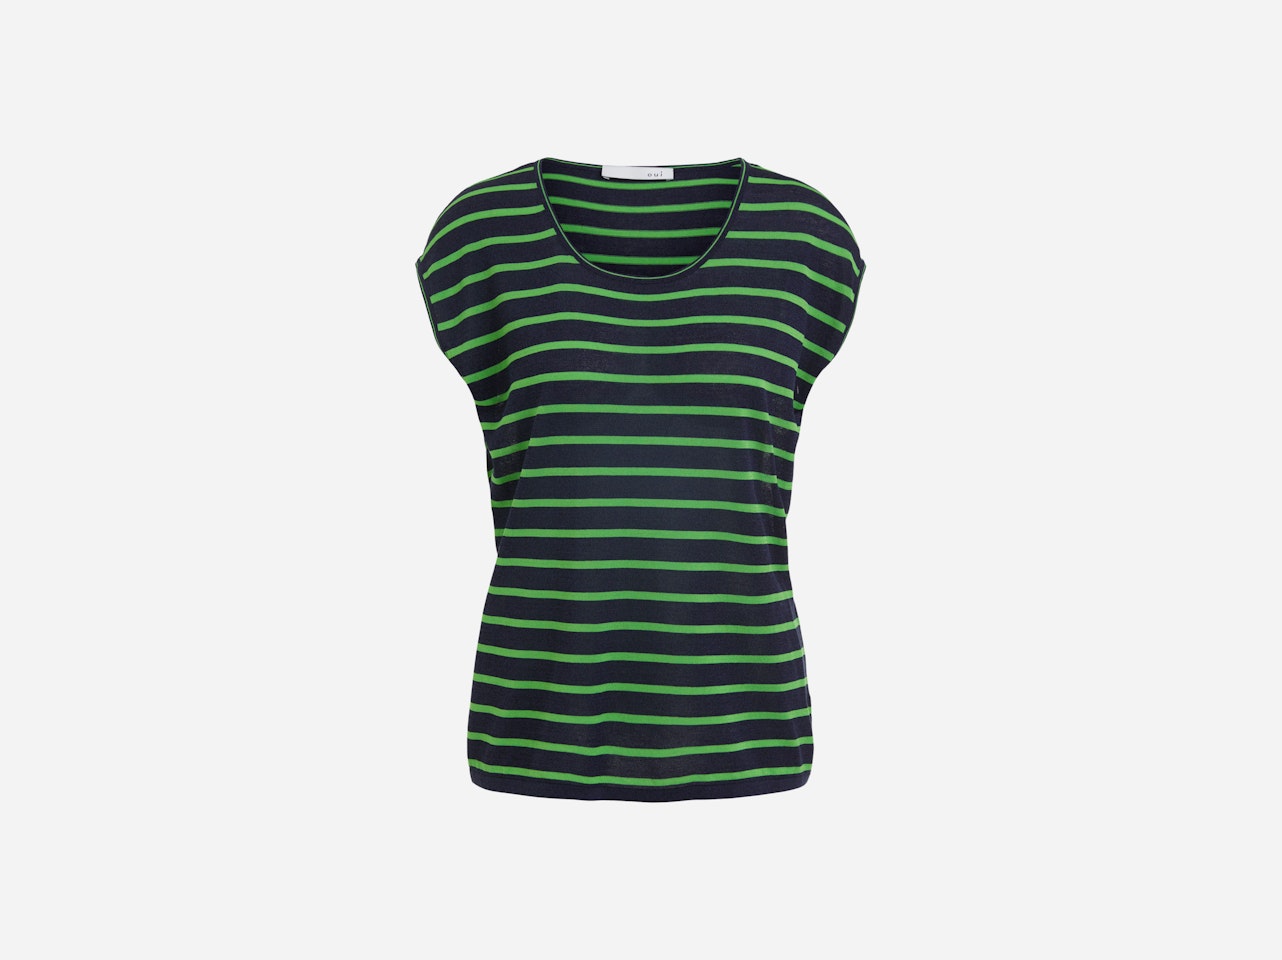 Bild 7 von Short-sleeved jumper striped in dk blue green | Oui